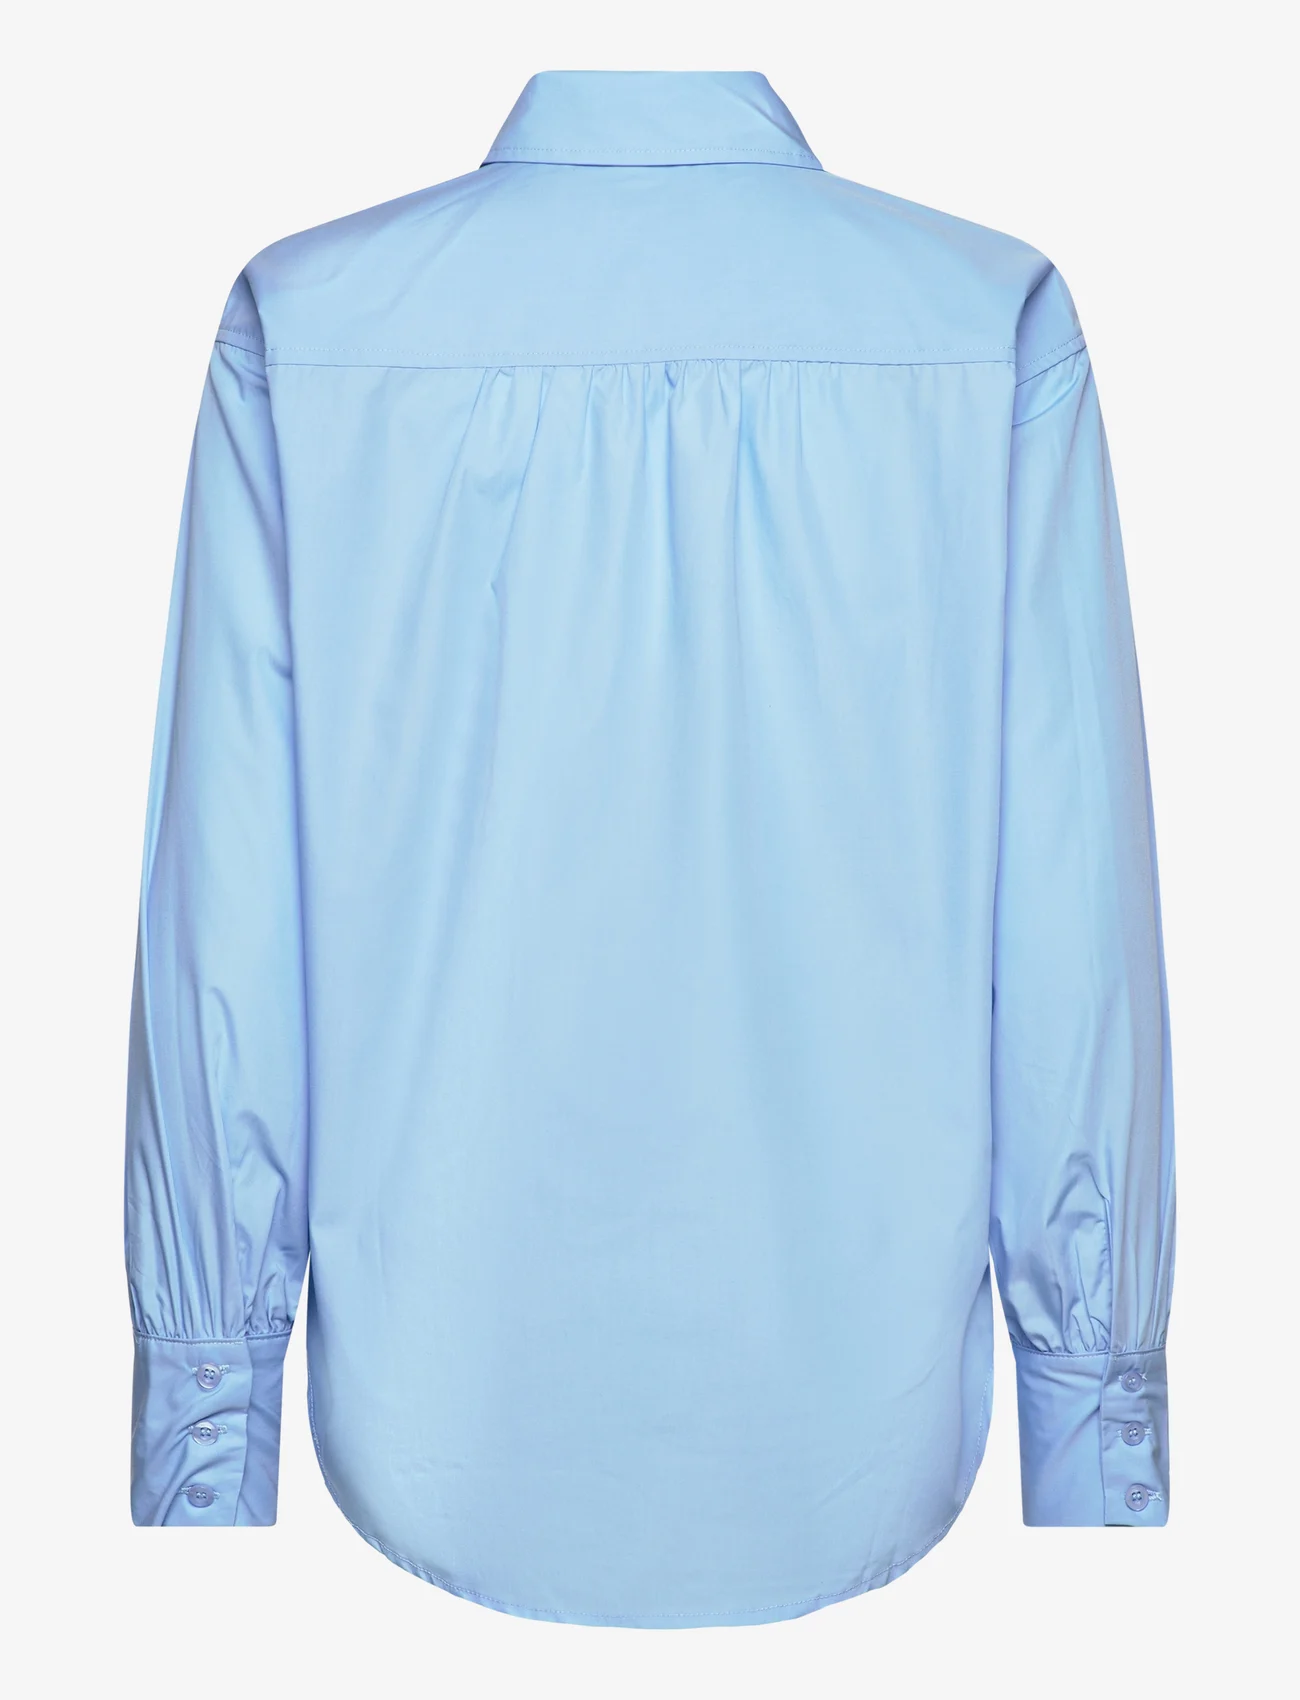 Rosemunde - RWSEbony shirt w/ruffles - long-sleeved shirts - heaven - 1